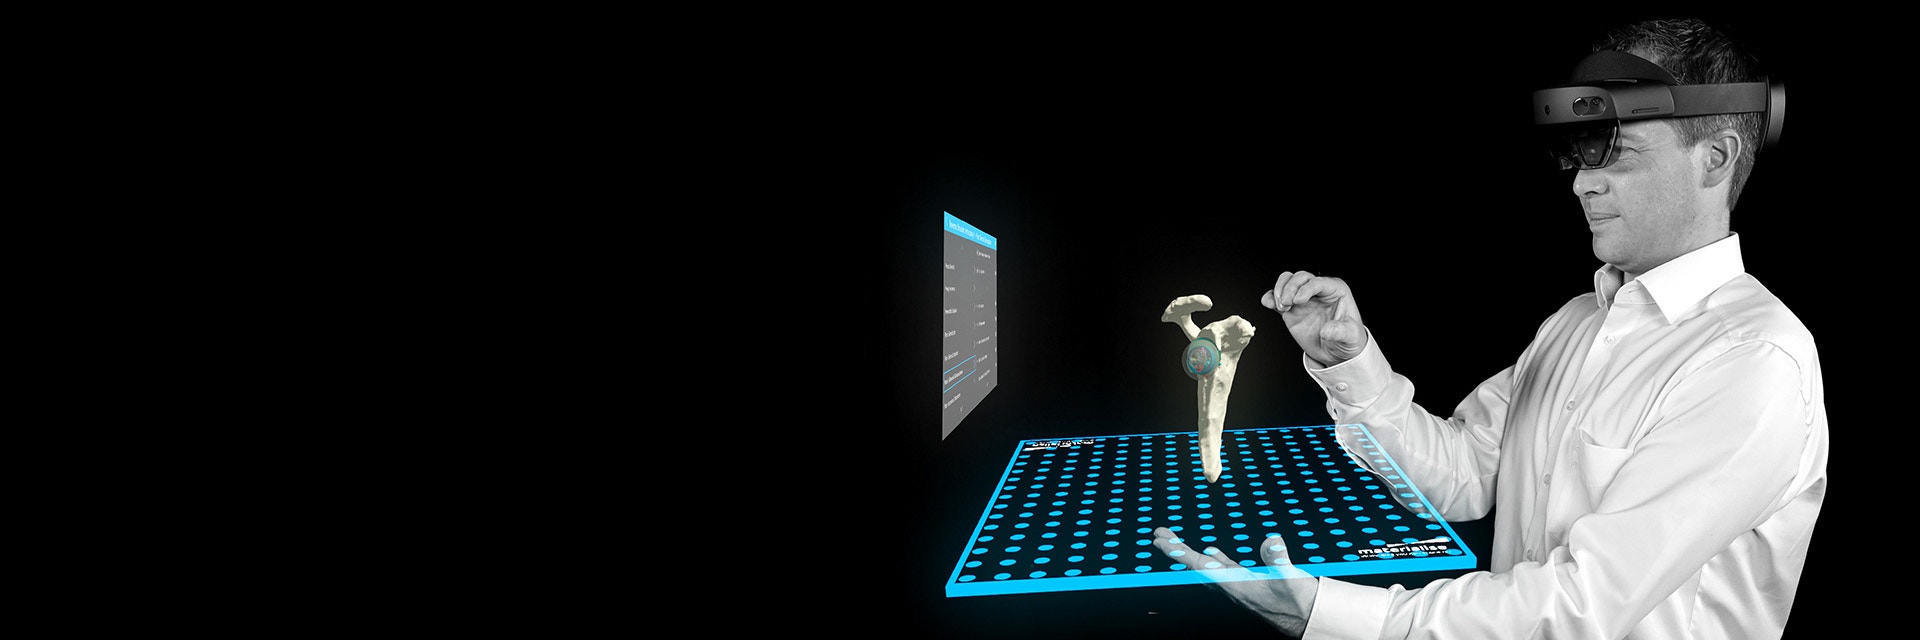 Microsoft Hololensを装着した男性が、Mimics Viewerの拡張現実（AR）機能を使って、股関節と人工股関節の模型を見ている様子